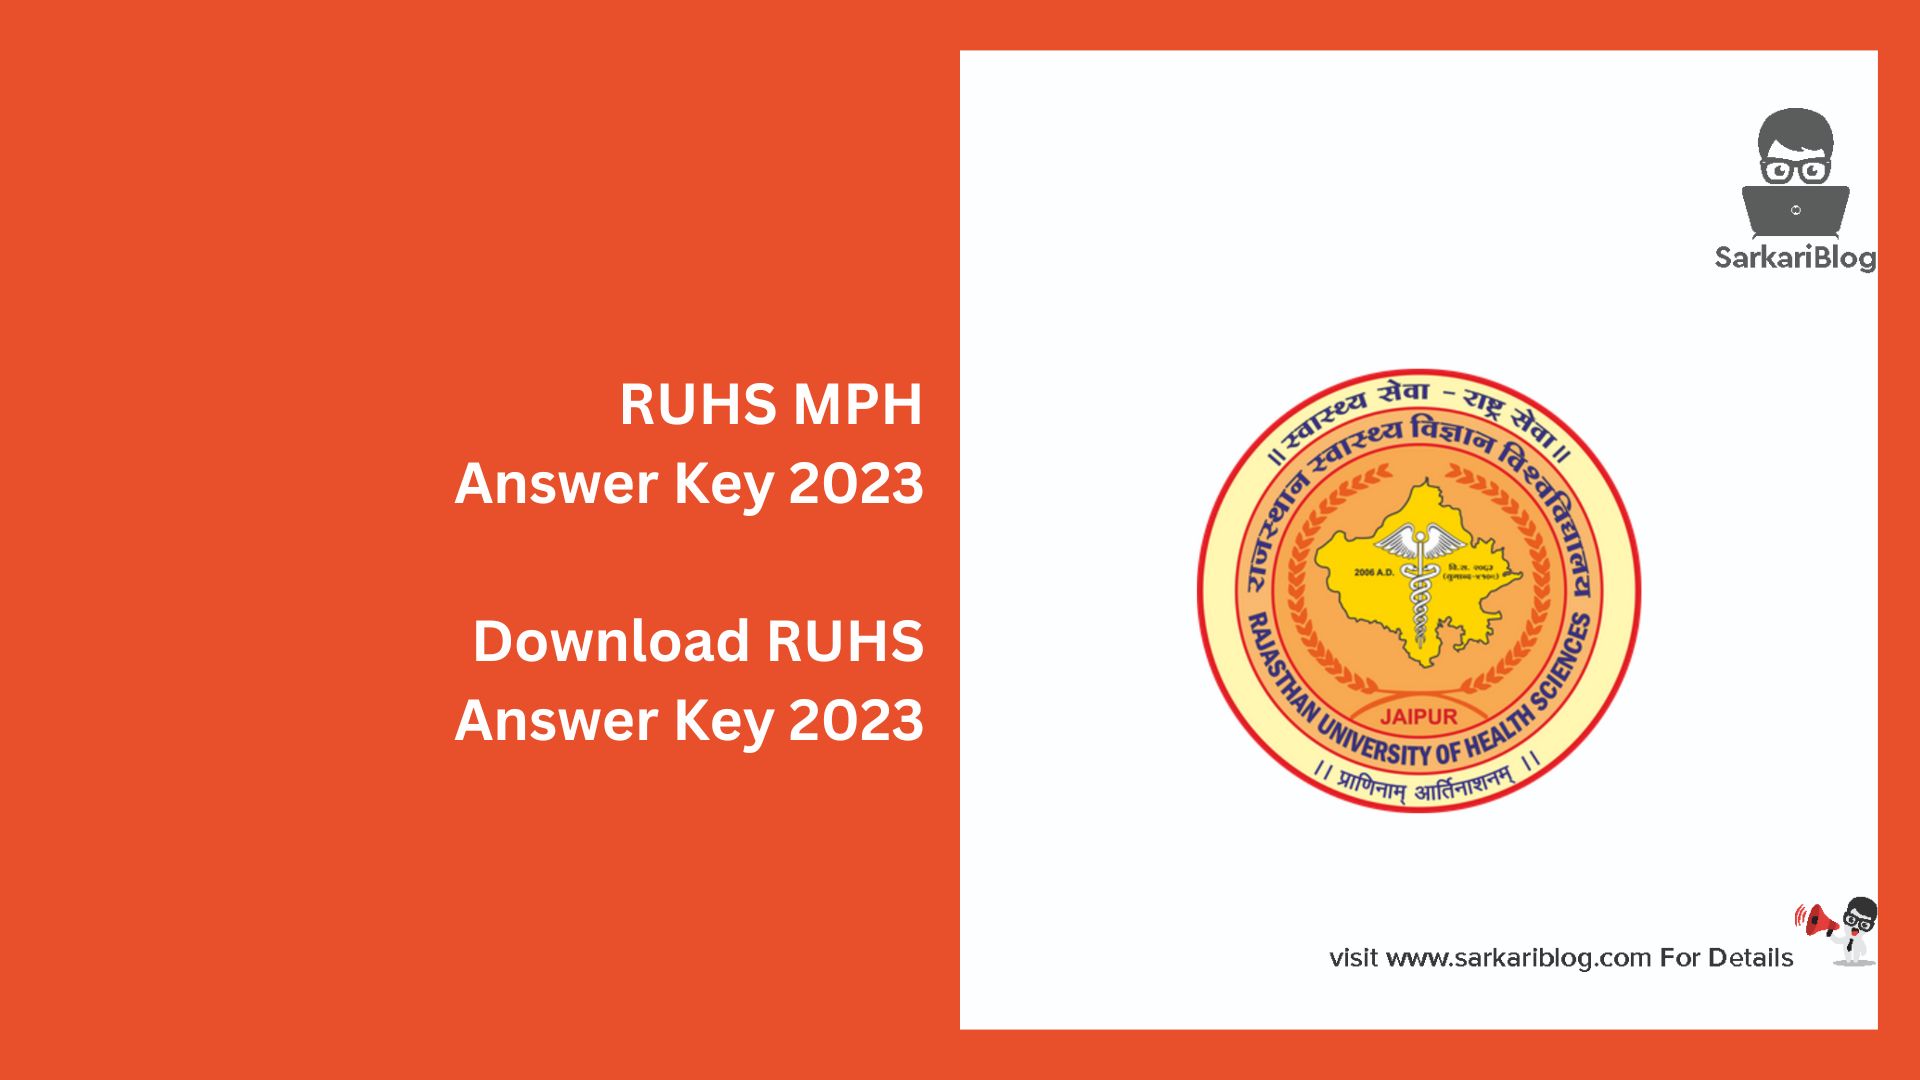 RUHS MPH Answer Key 2023